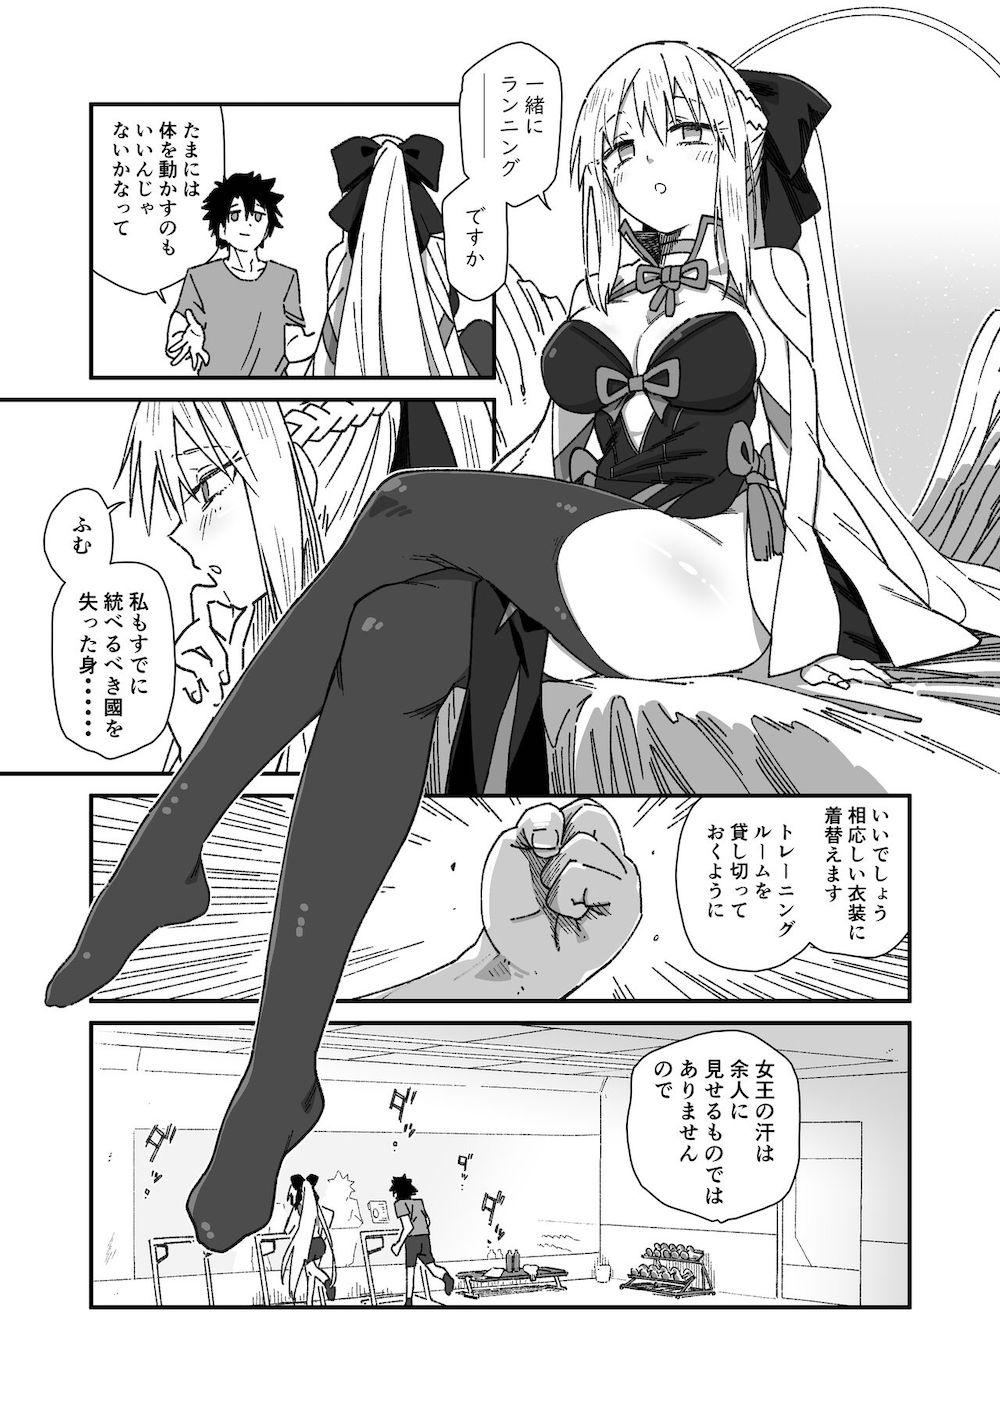 【Fate/Grand Order】ランニングに誘われ汗だくの状態で勃起した夫の藤丸立香に迫って女性優位な夫婦の営みを楽しんじゃう女王様気質のモルガン2